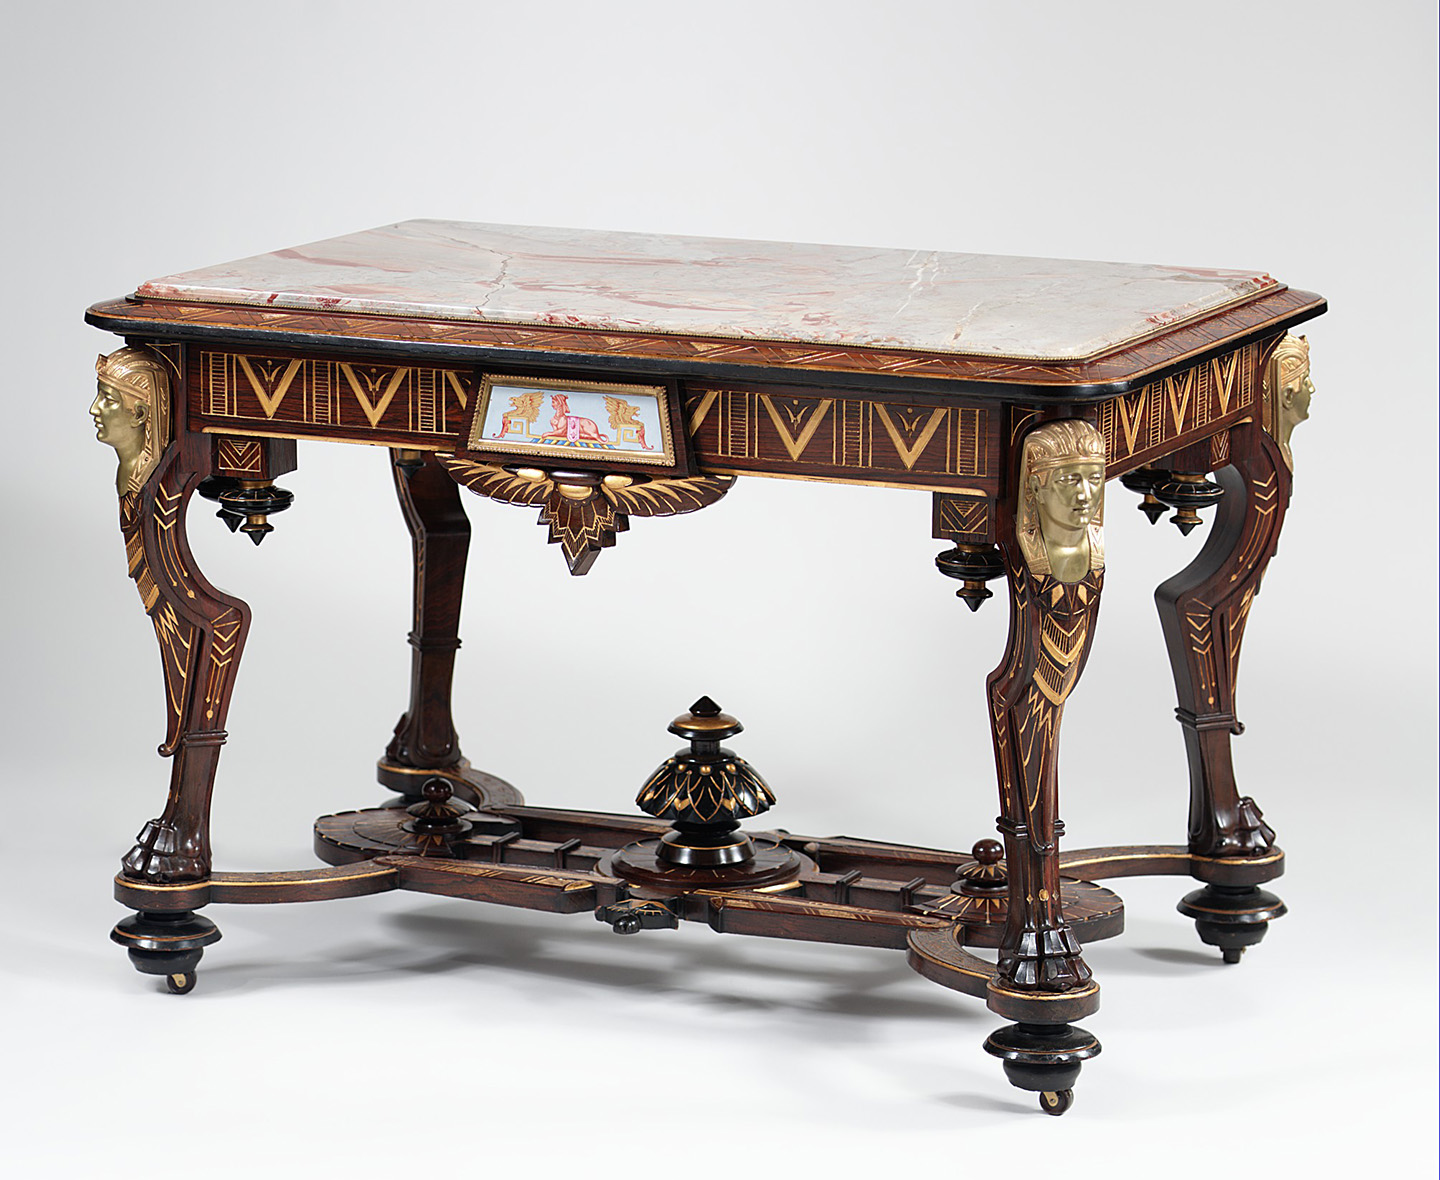 Các họa tiết trang trí như đầu nhân sư và hoa sen được sử dụng cho chiếc bàn trung tâm theo phong cách Renaissance Revival, được cho là của Hãng sản xuất Pottier & Stymus, năm 1870–1875. Bảo tàng Nghệ thuật Metropolitan, thành phố New York. (Ảnh: Tư liệu công cộng)